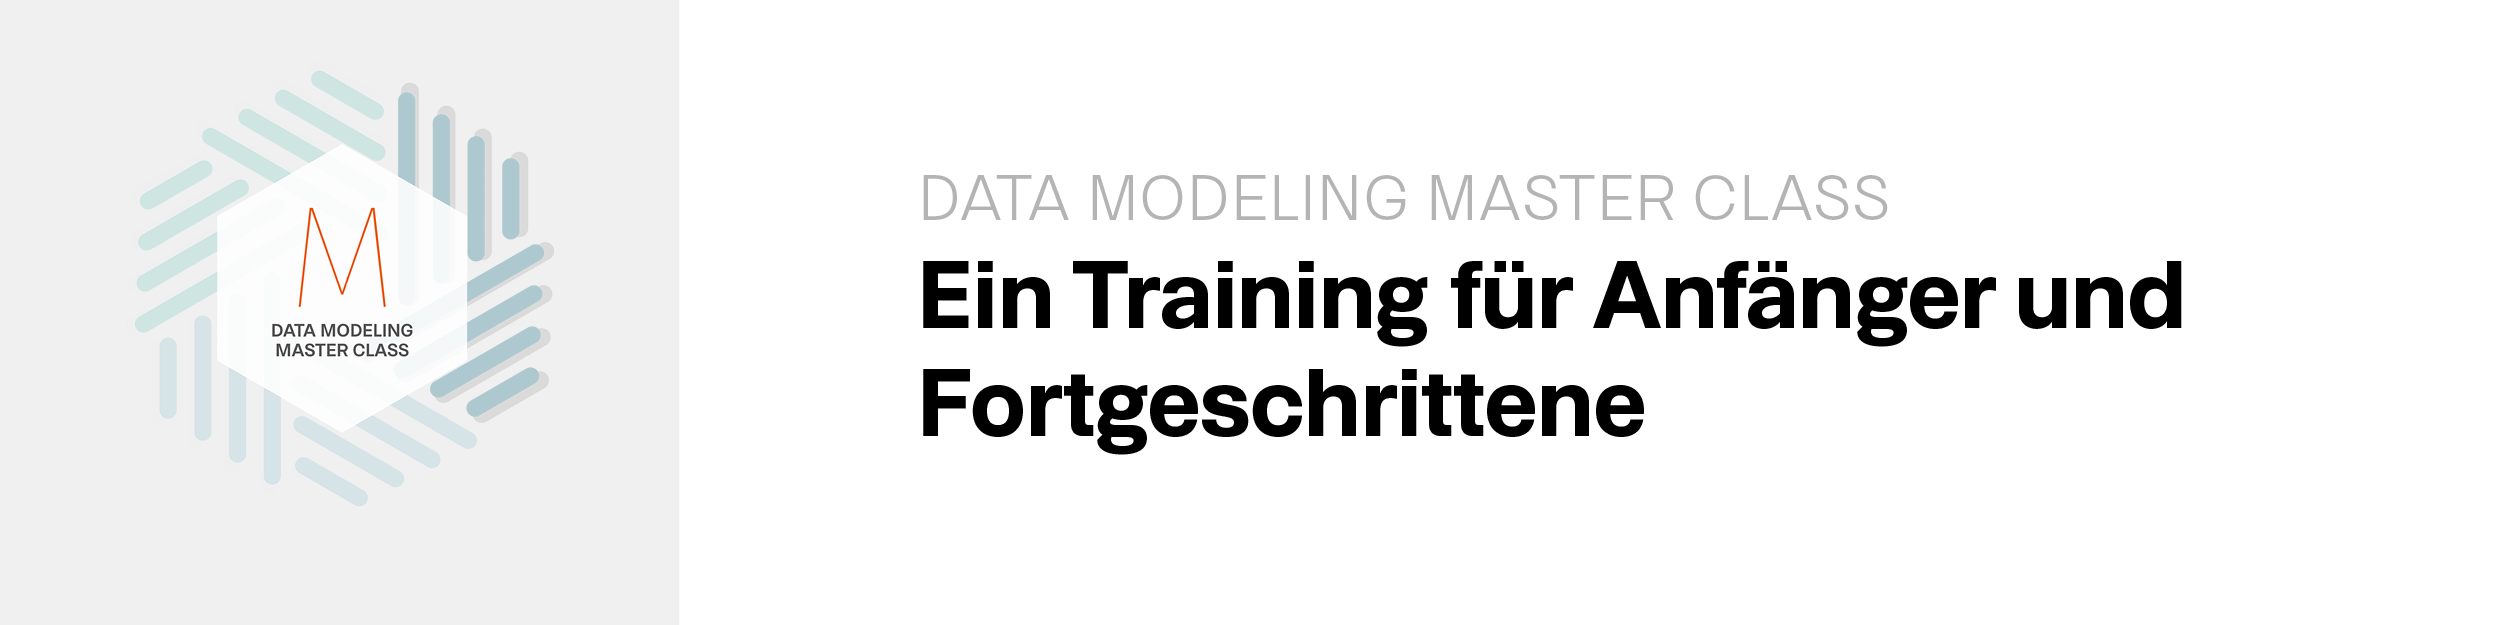 Deutsche Data Modeling Master Class